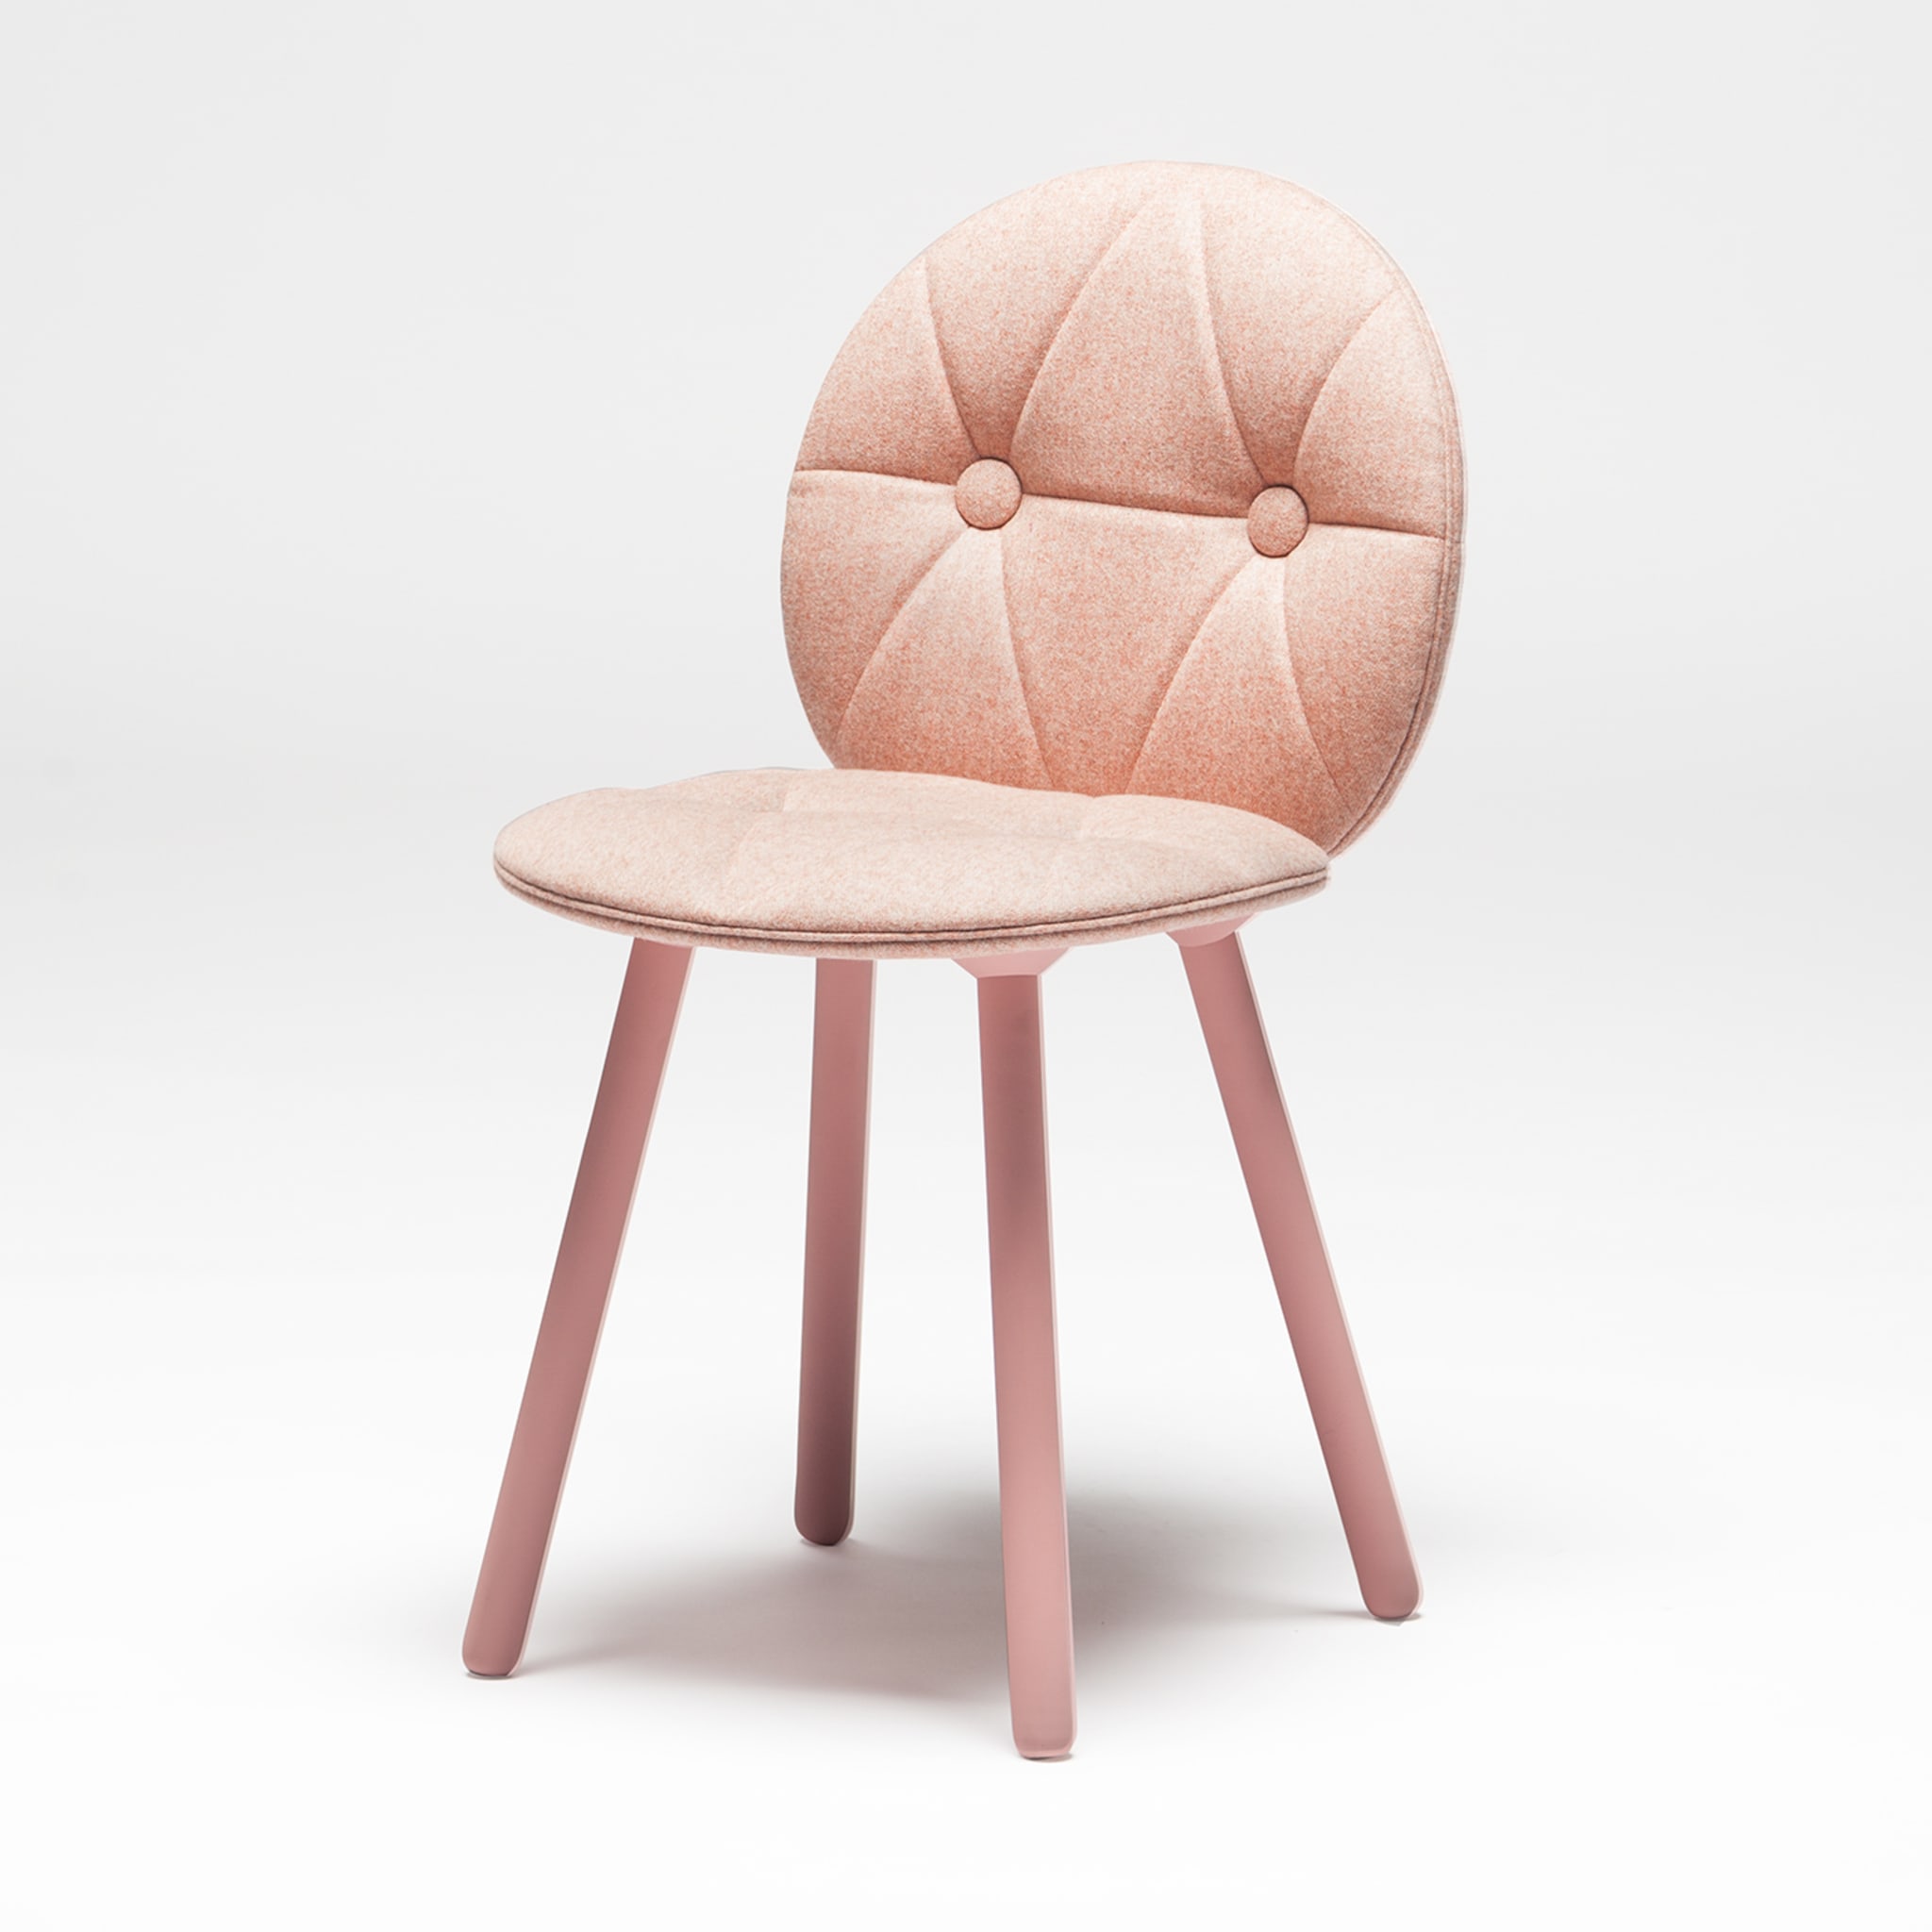 Harlequin 900 Pink Chair by Markus Johansson - Vue alternative 3